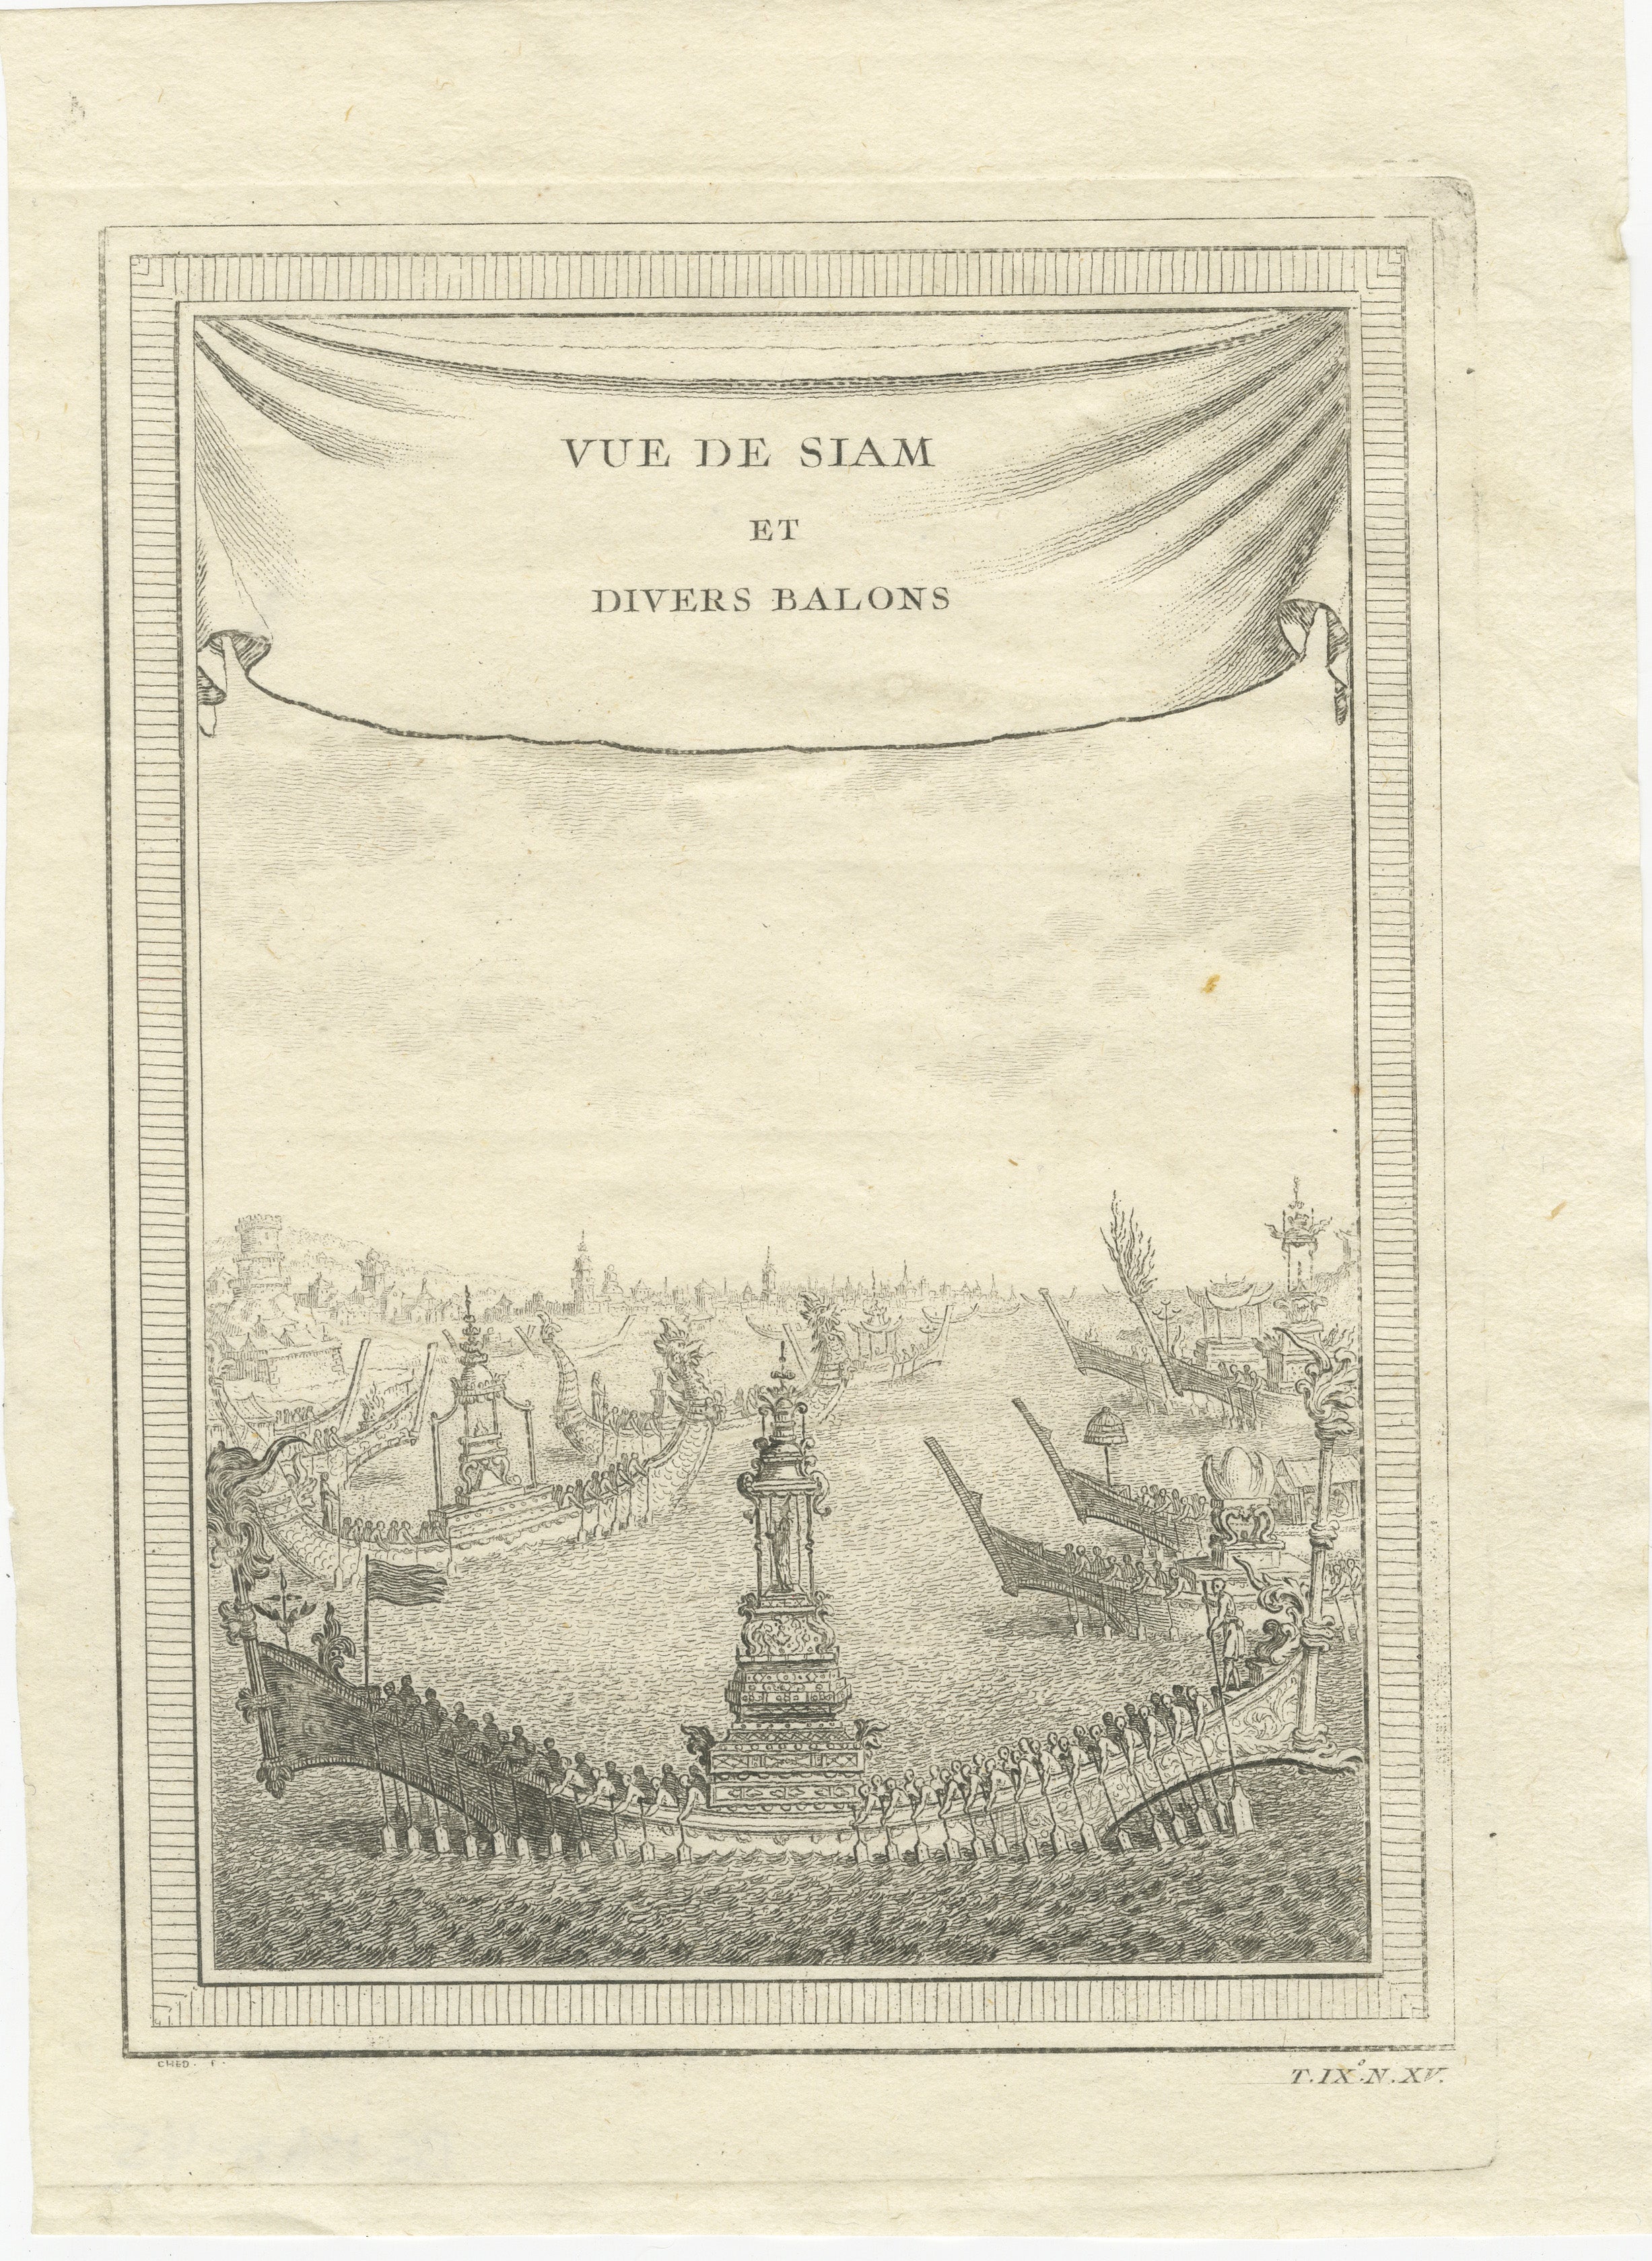 Gravure originale représentant une vue du Siam, l'actuelle Thaïlande, et plus particulièrement de la ville d'Ayutthaya avec de nombreux bateaux sur le fleuve. Le titre, 